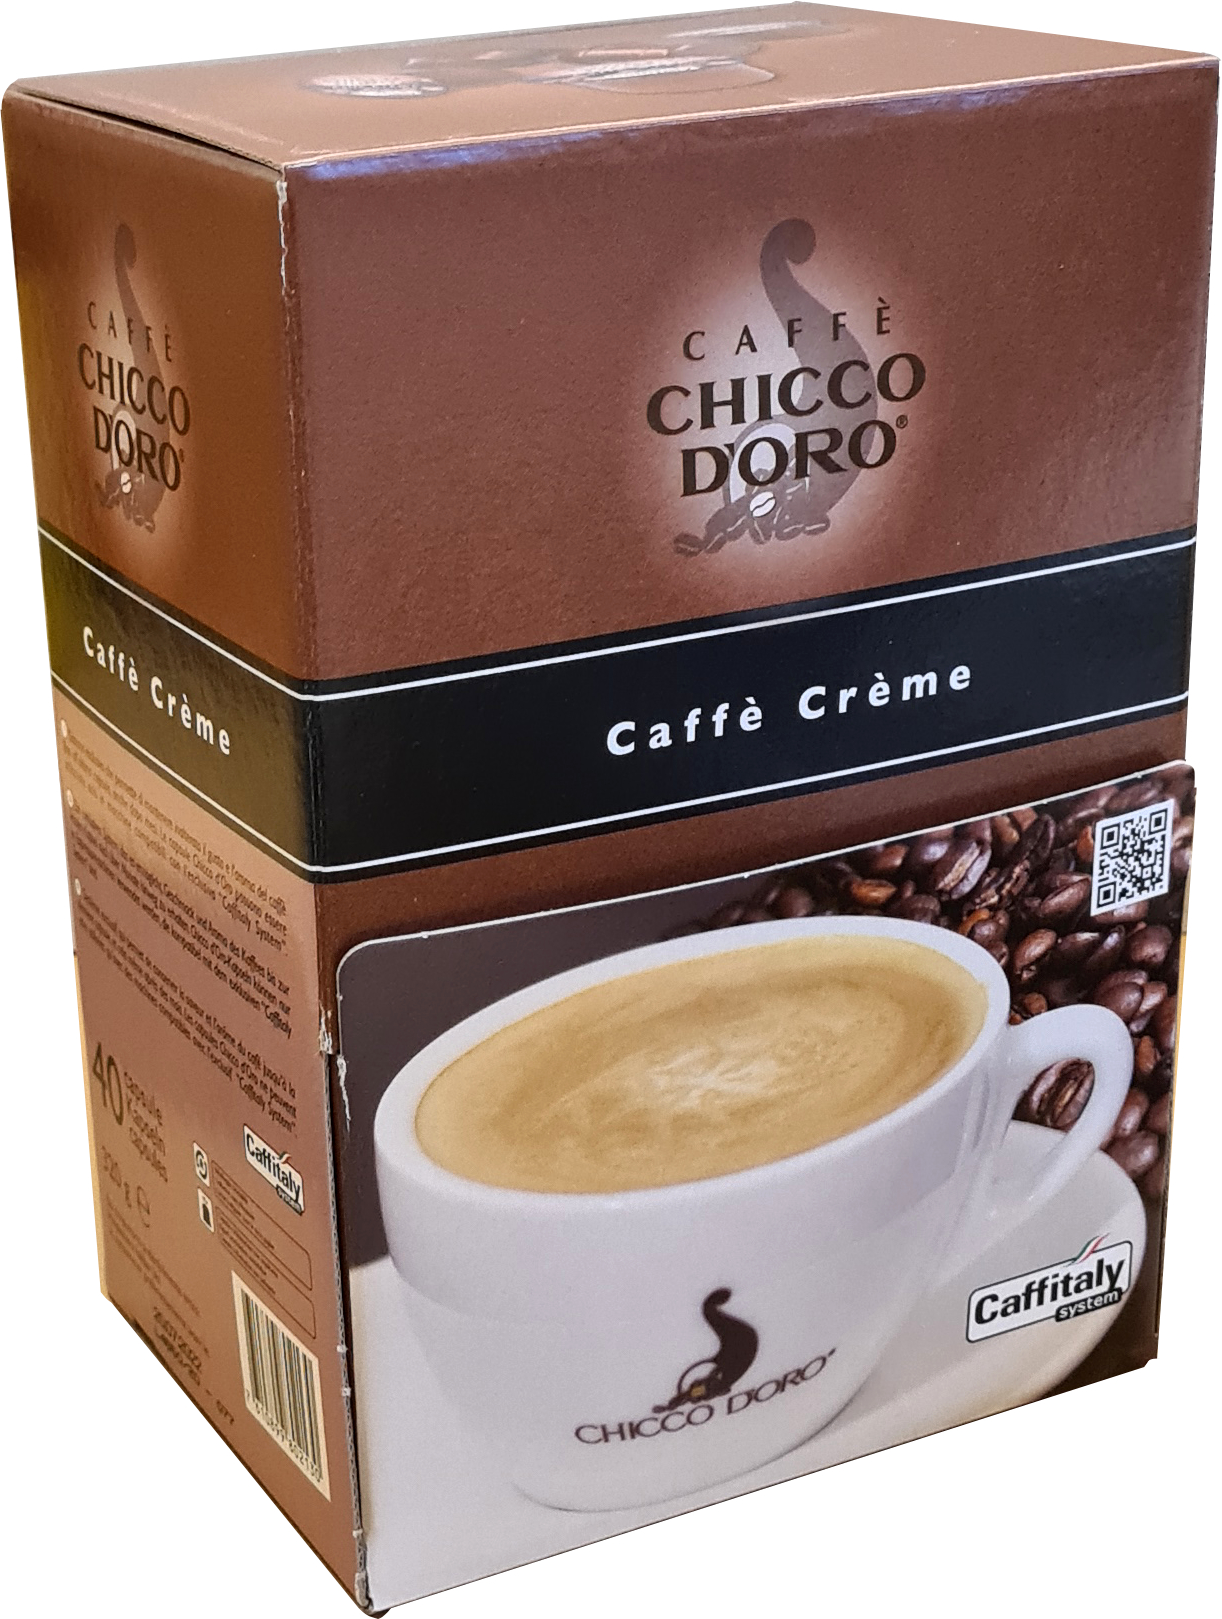 CHICCO D'ORO Kaffee Caffitaly 802130 Caffè Crème 40 Stück